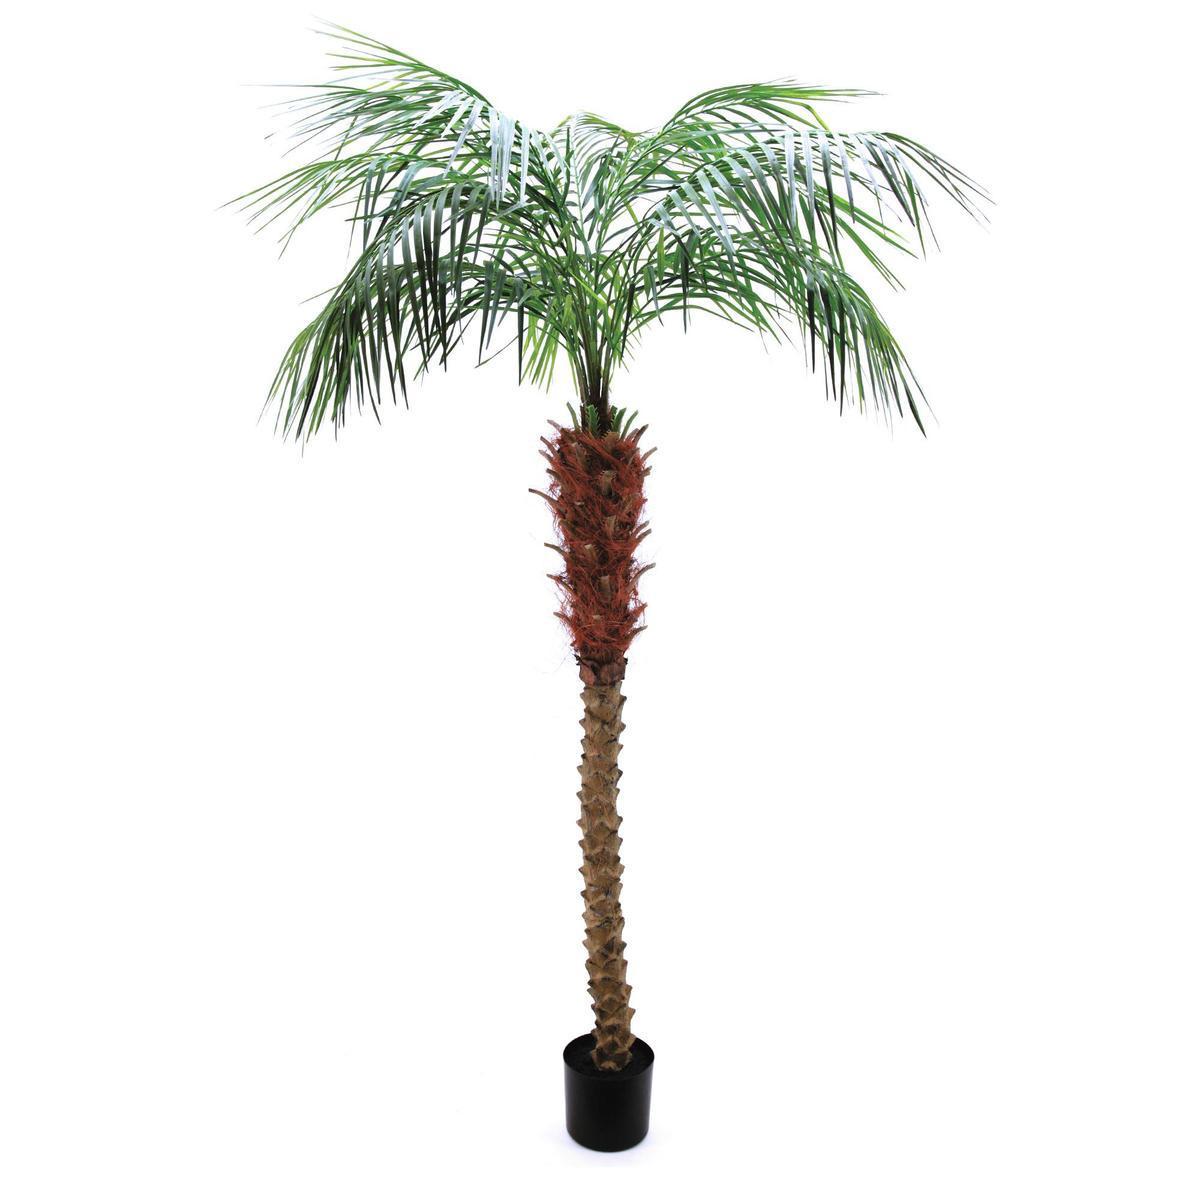 Palmier Areca en pot - H 183 cm